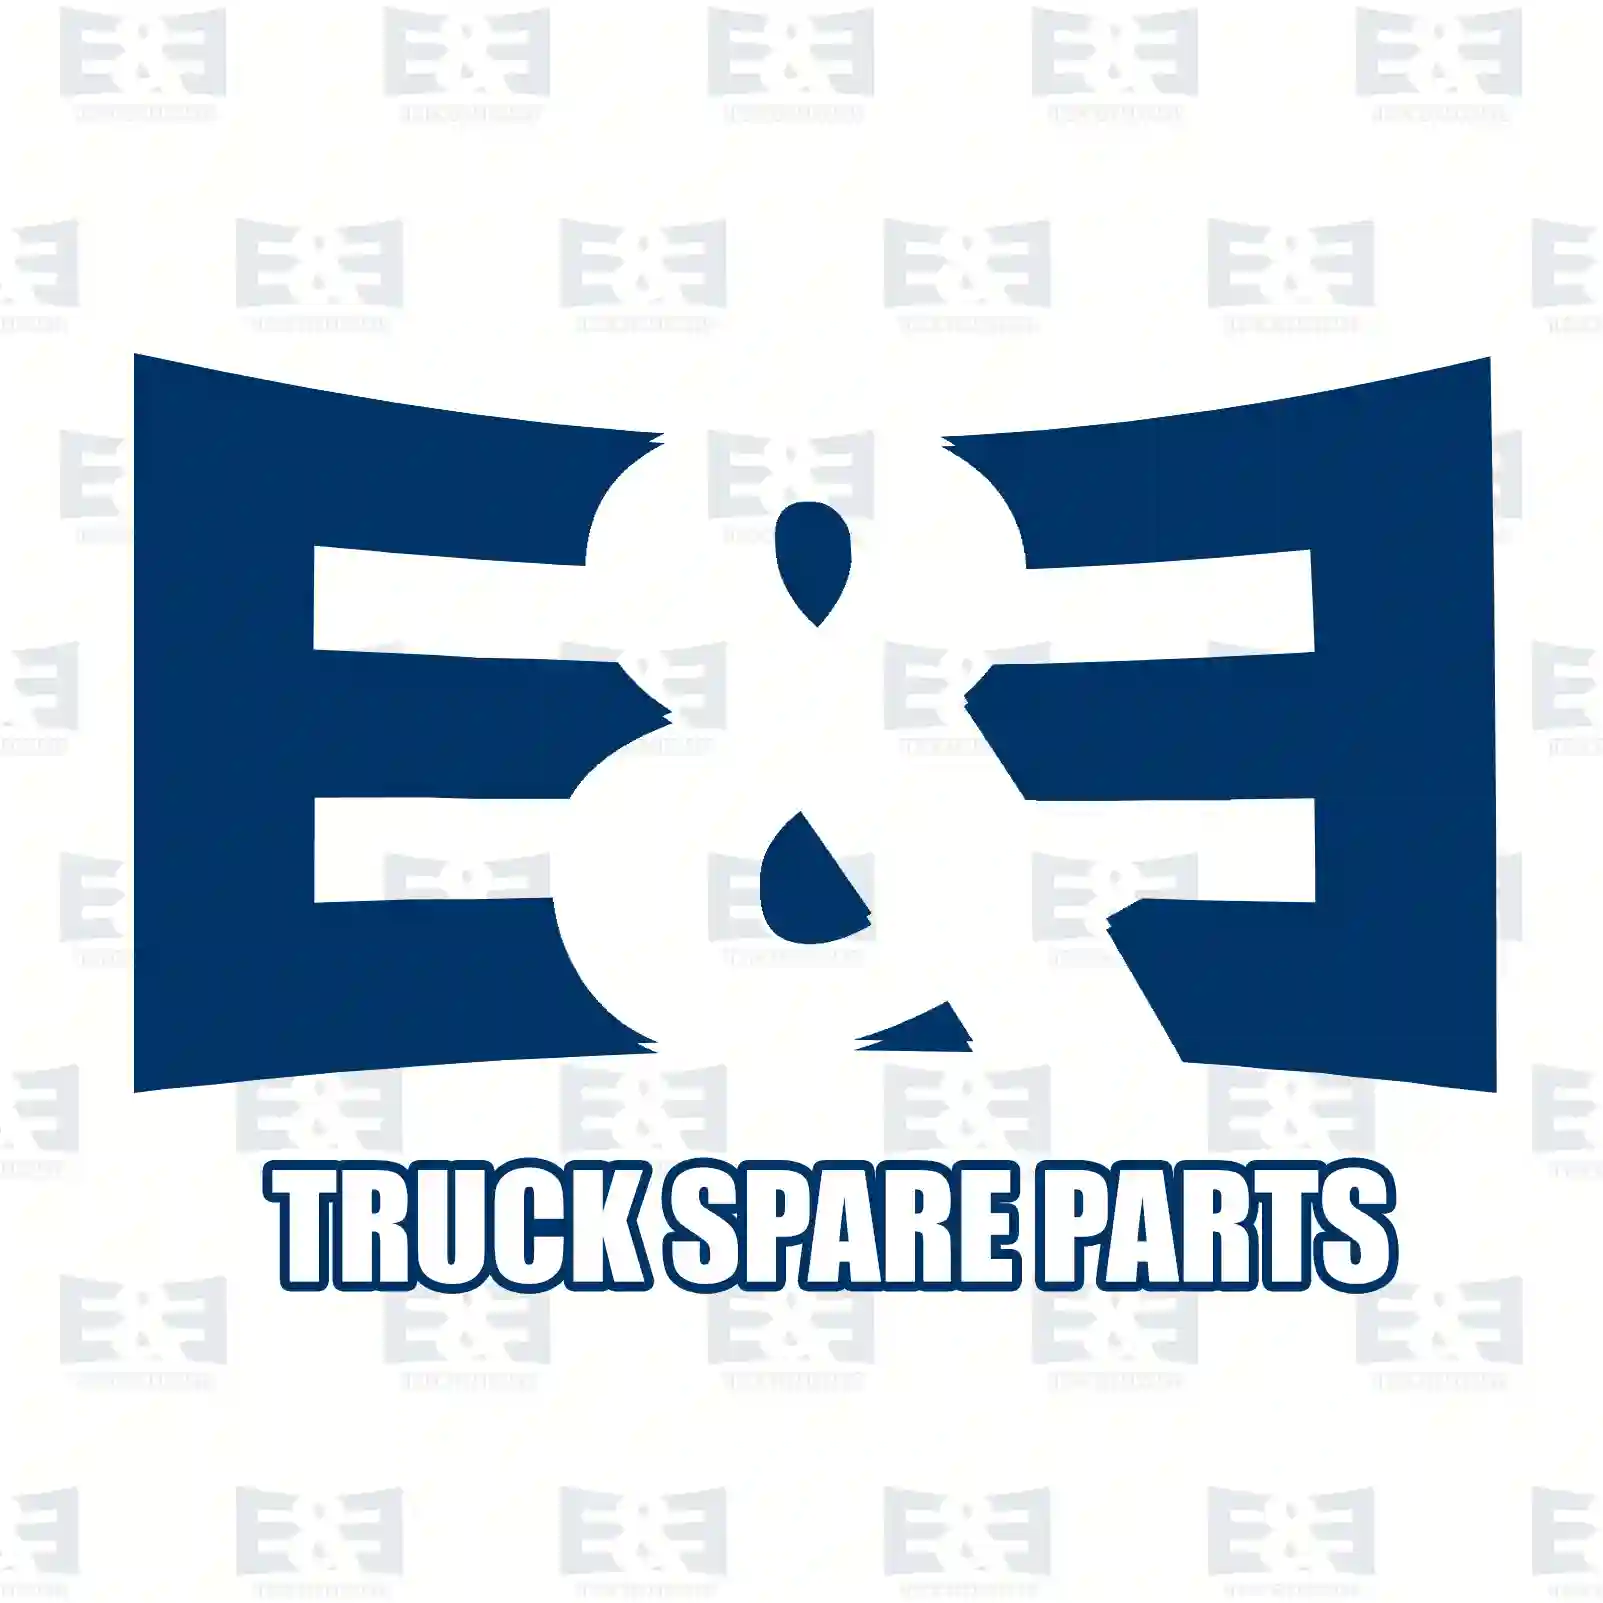 Brake disc, 2E2297400, 3112965, , , , , , , , , ||  2E2297400 E&E Truck Spare Parts | Truck Spare Parts, Auotomotive Spare Parts Brake disc, 2E2297400, 3112965, , , , , , , , , ||  2E2297400 E&E Truck Spare Parts | Truck Spare Parts, Auotomotive Spare Parts